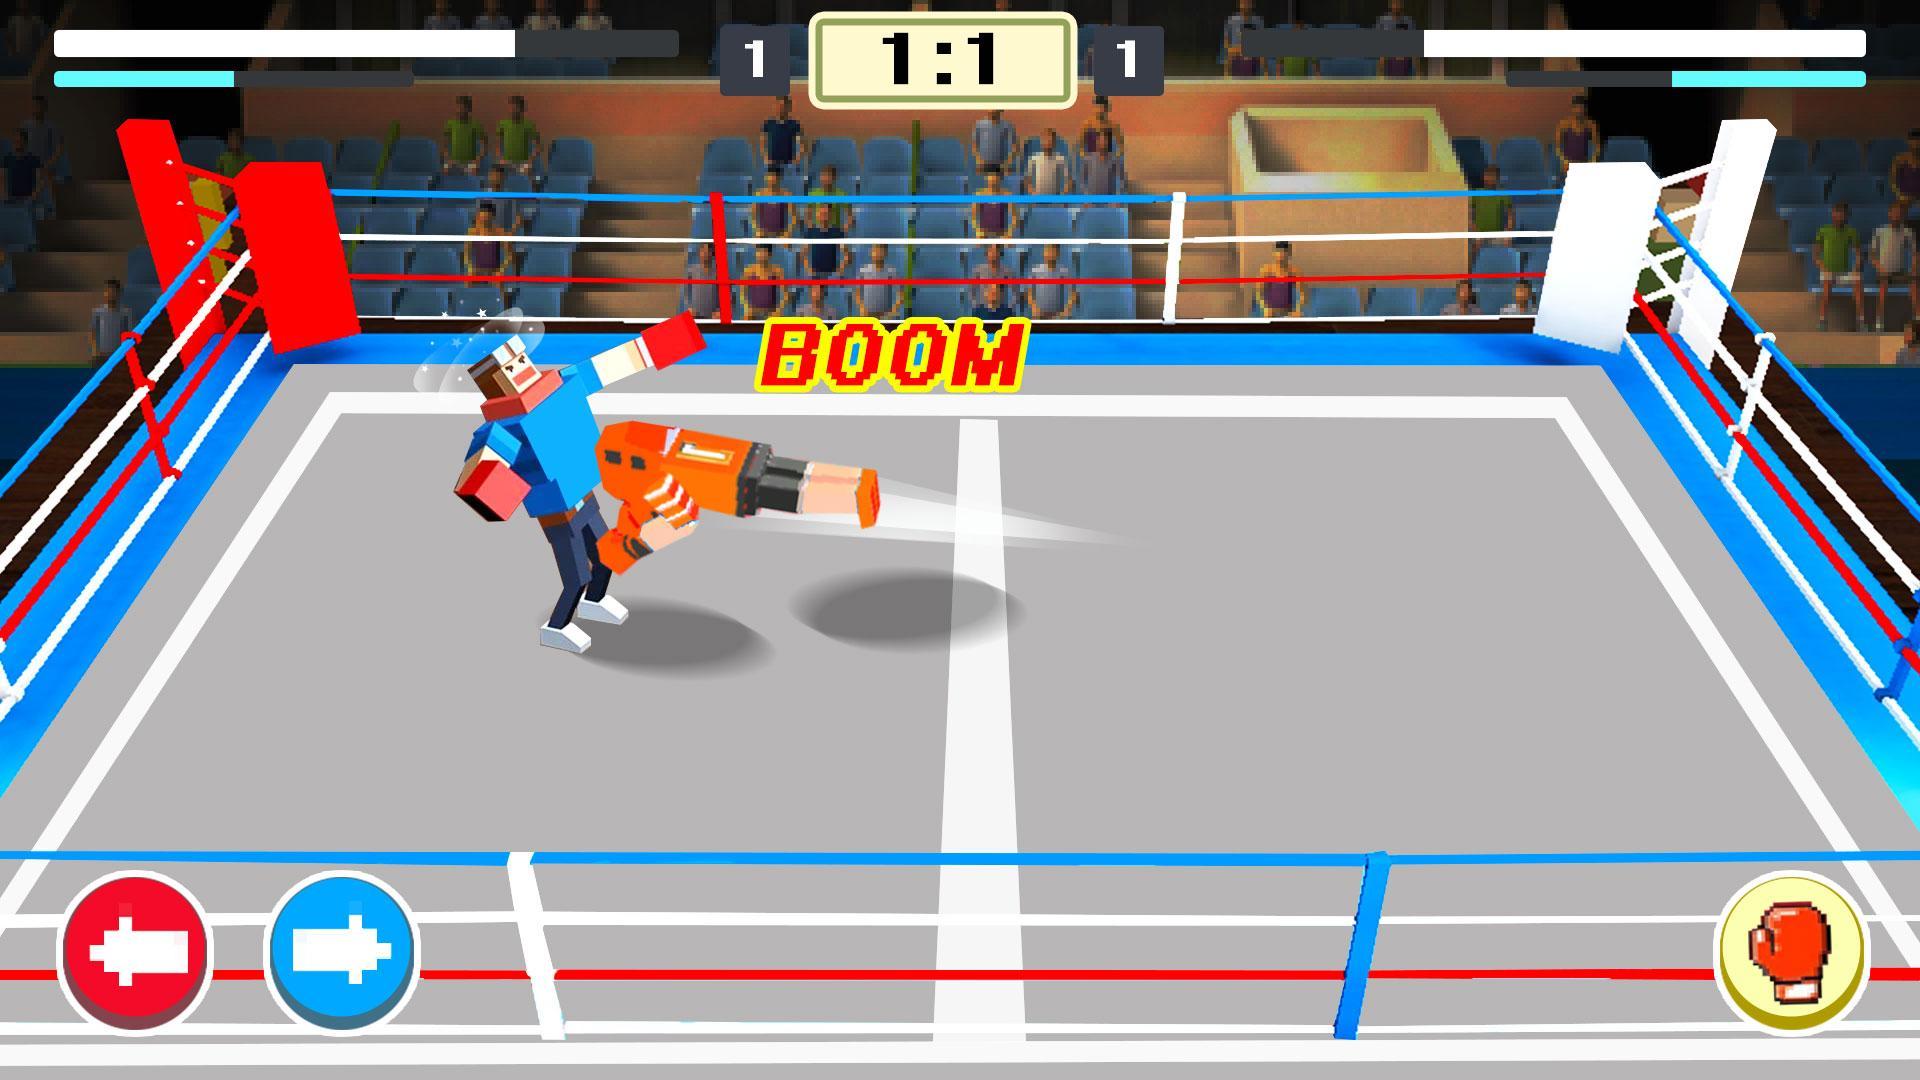 Screenshot 1 of Mine Boxing - 2019 Sports nakakatuwang laro ng pakikipaglaban sa mundo 1.0.1